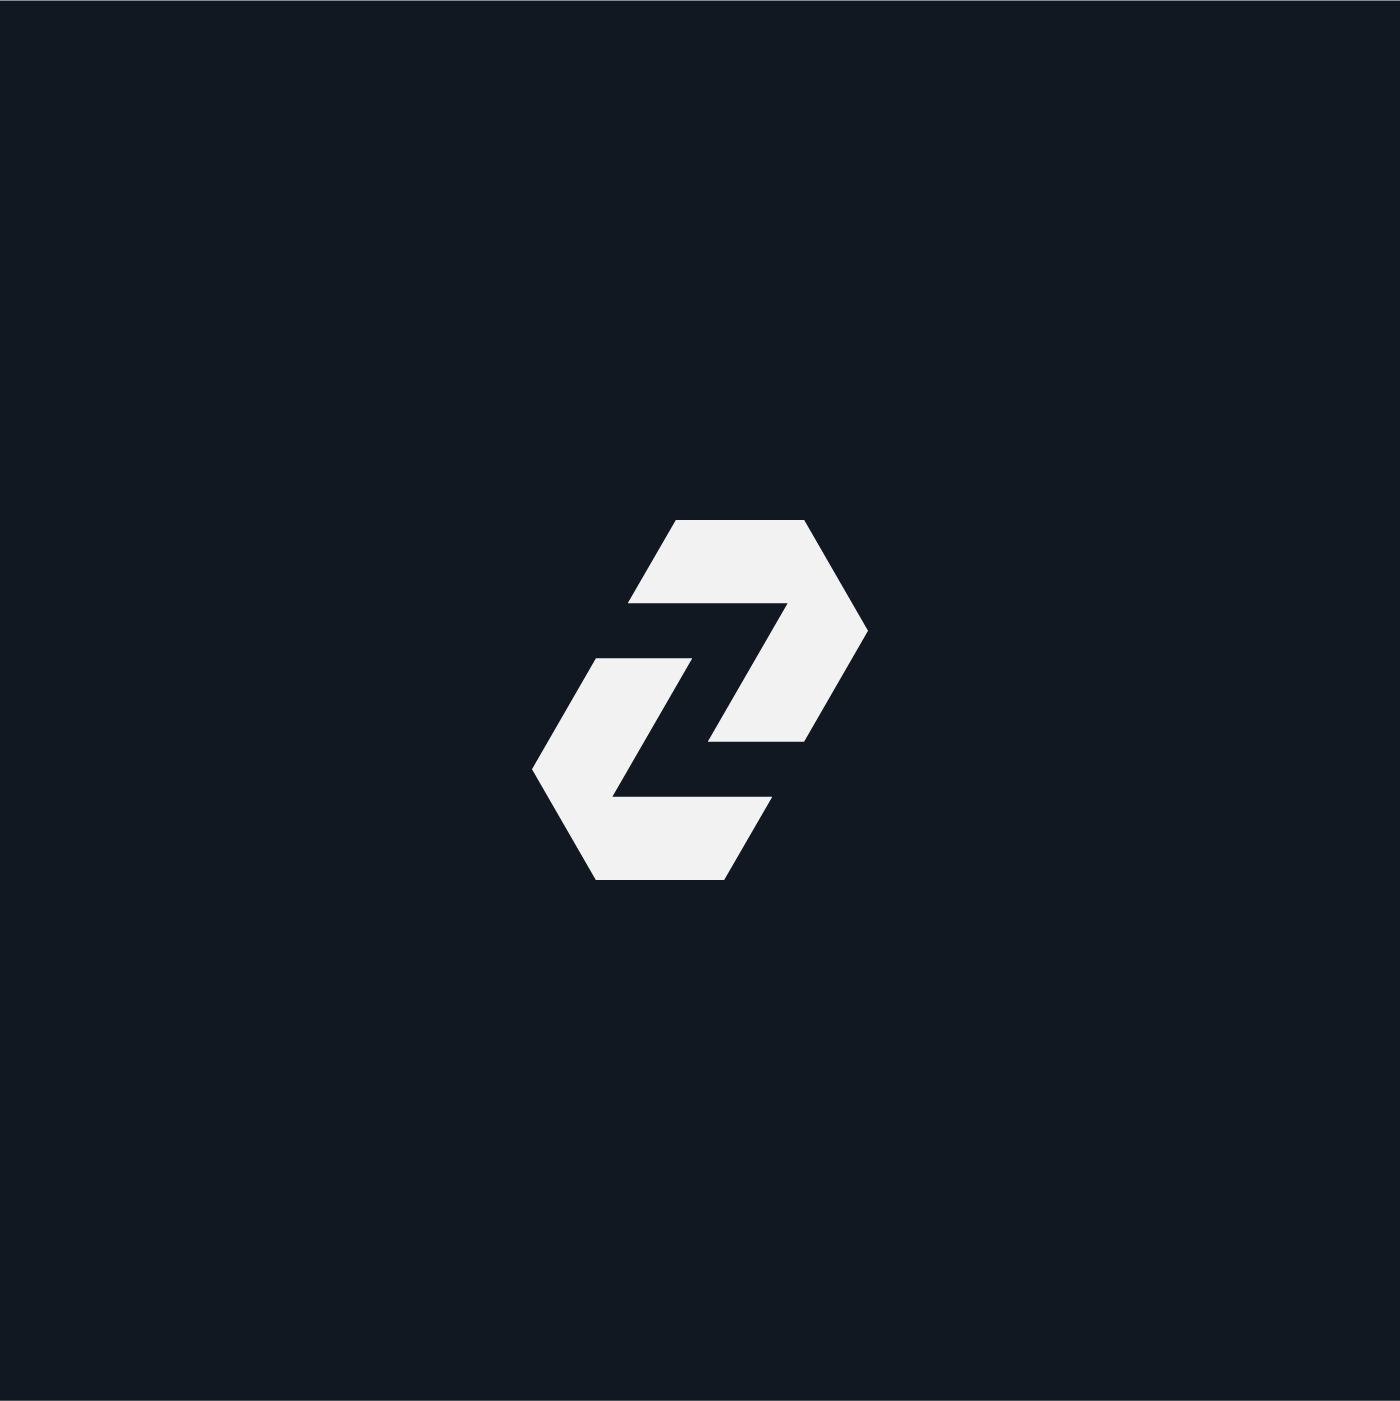 Z Letter Mark Logo Concept